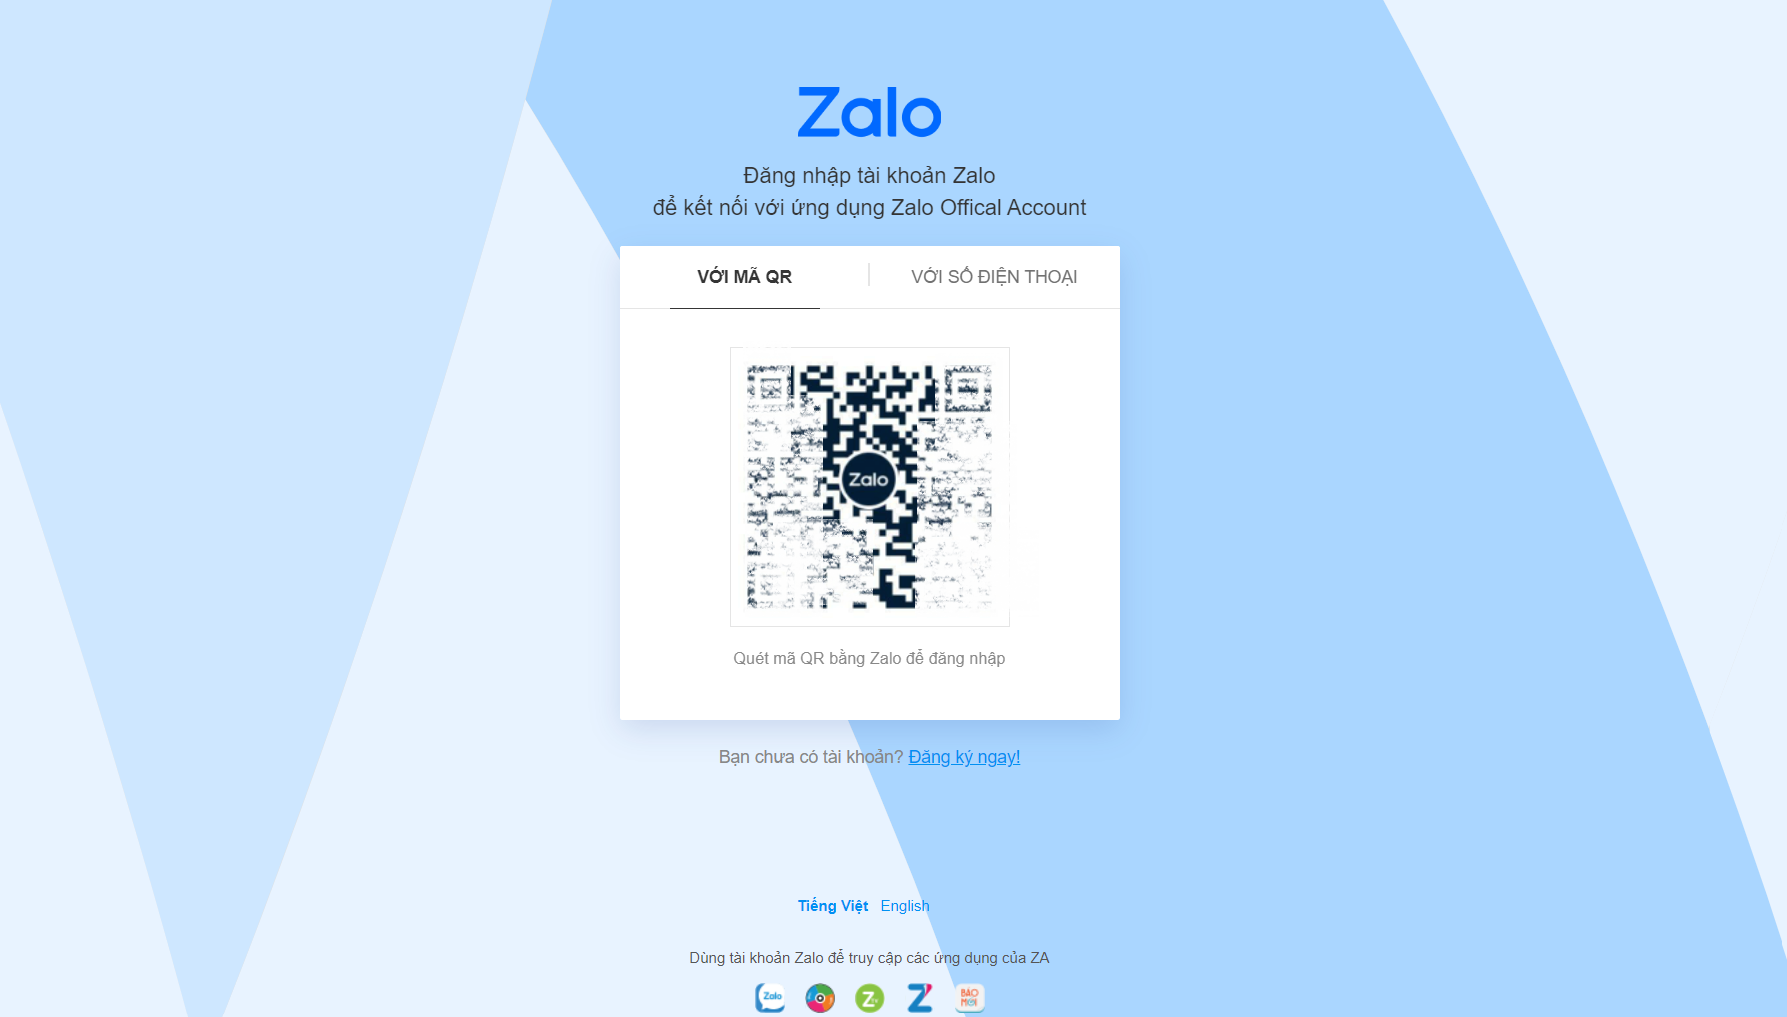 Hướng dẫn đăng ký tài khoản Zalo Official Account - Doanh Nghiệp | Zalo Official Account